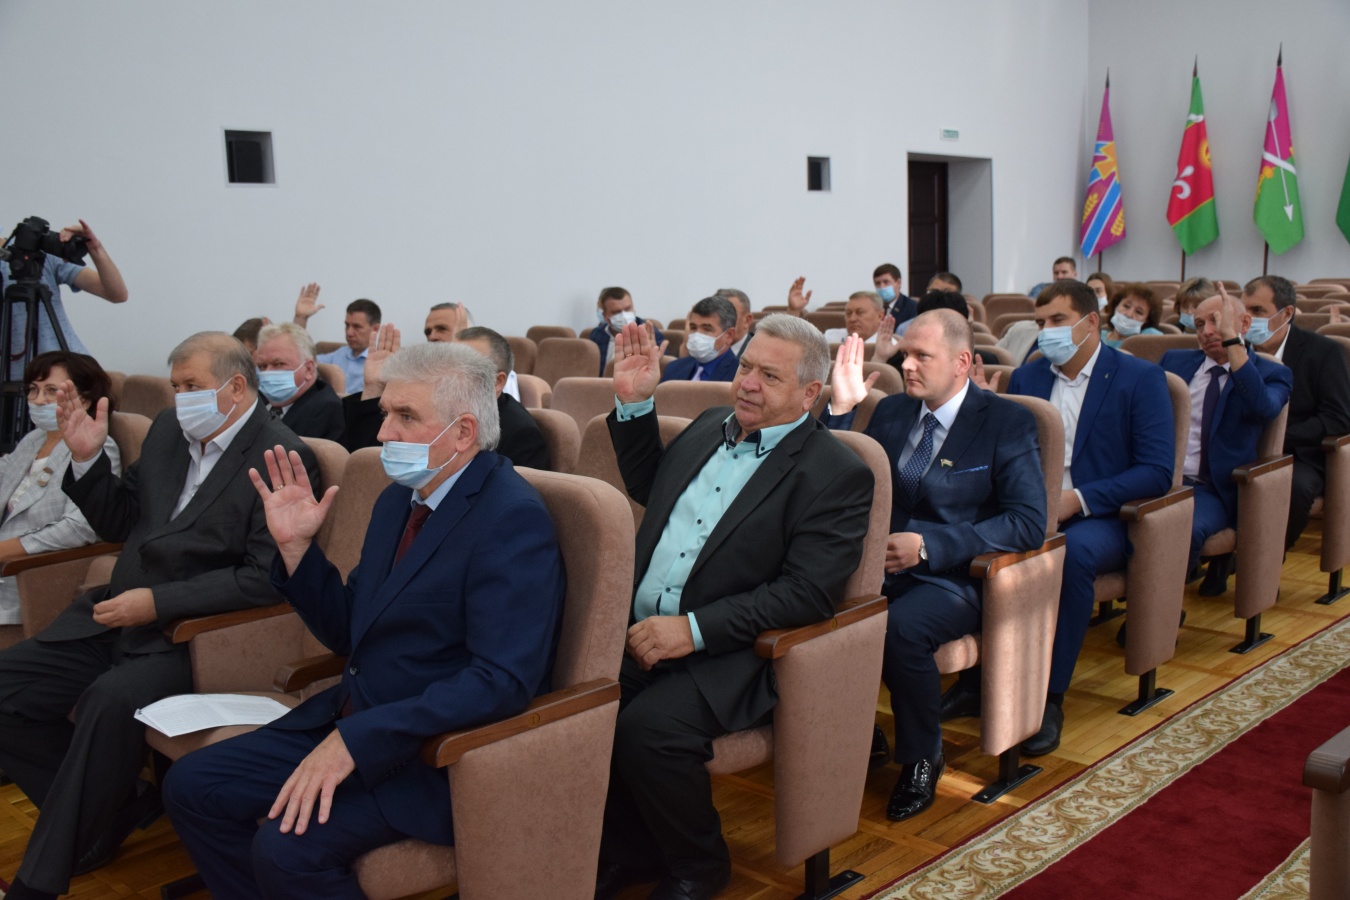 На первой сессии райсовета седьмого созыва избрали главу Каневского района